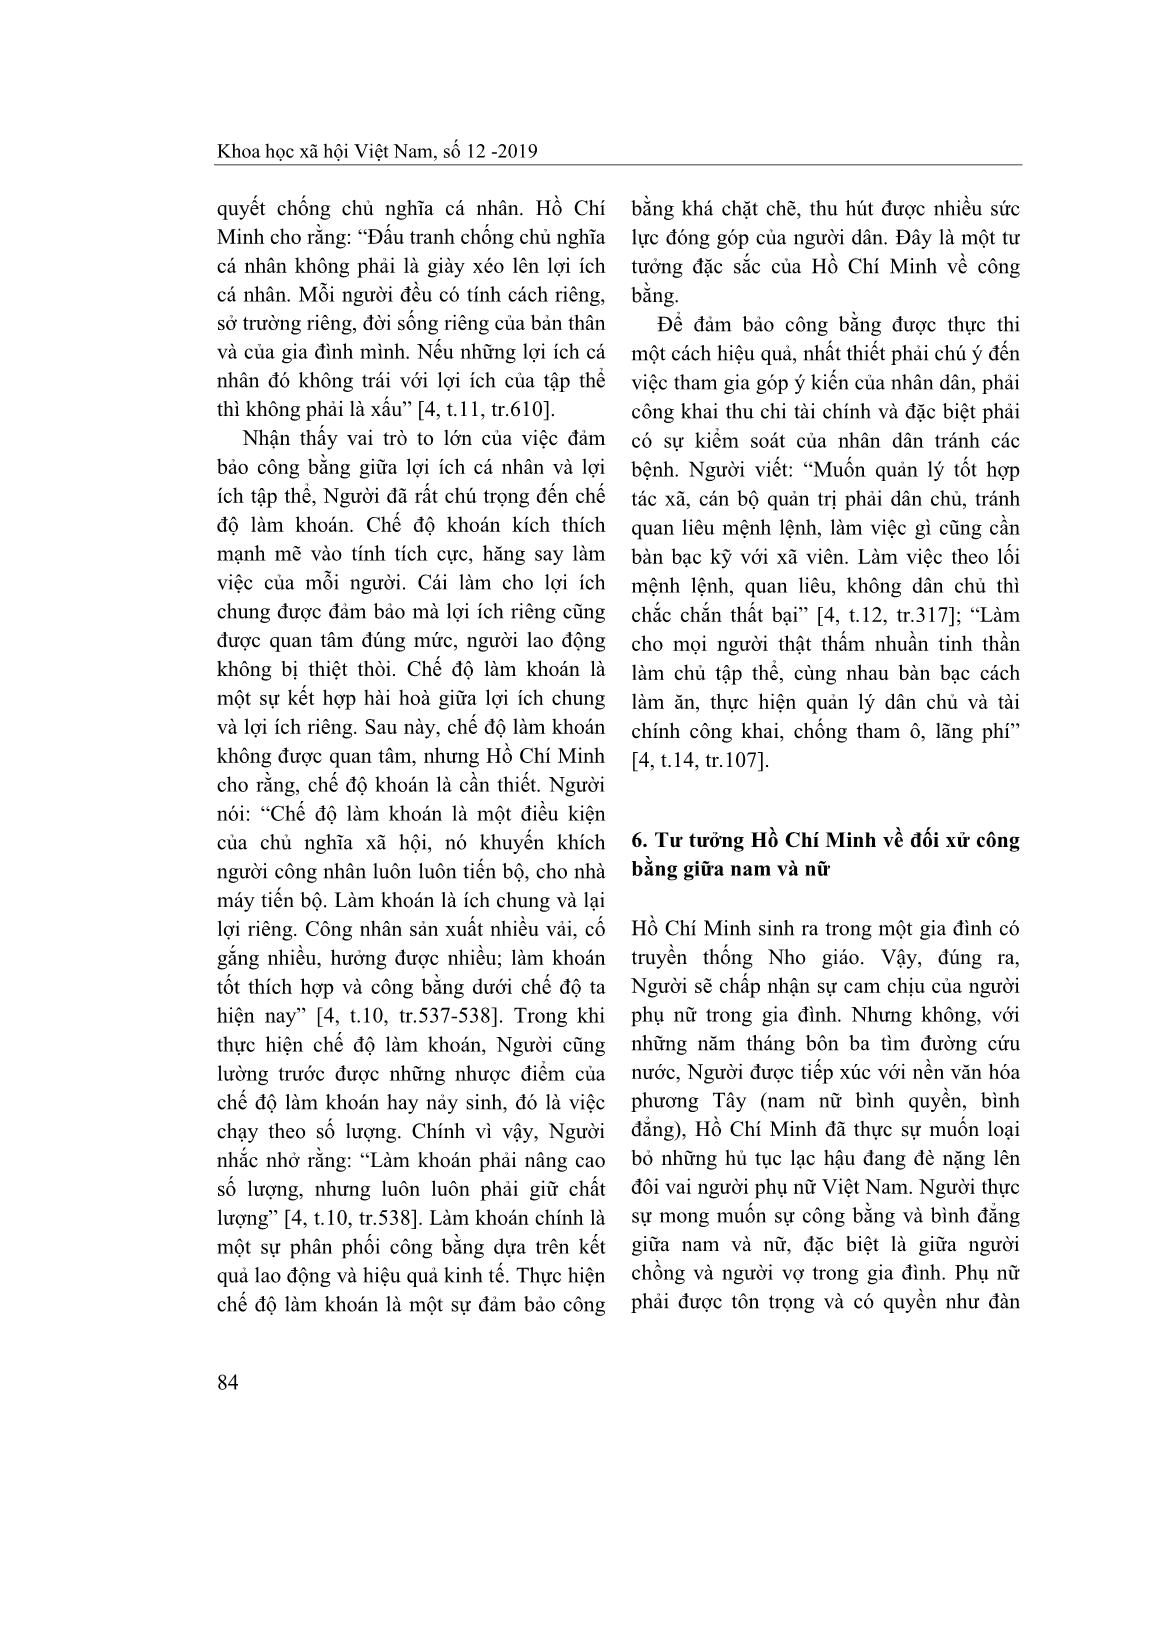 Tư tưởng Hồ Chí Minh về công bằng trang 7